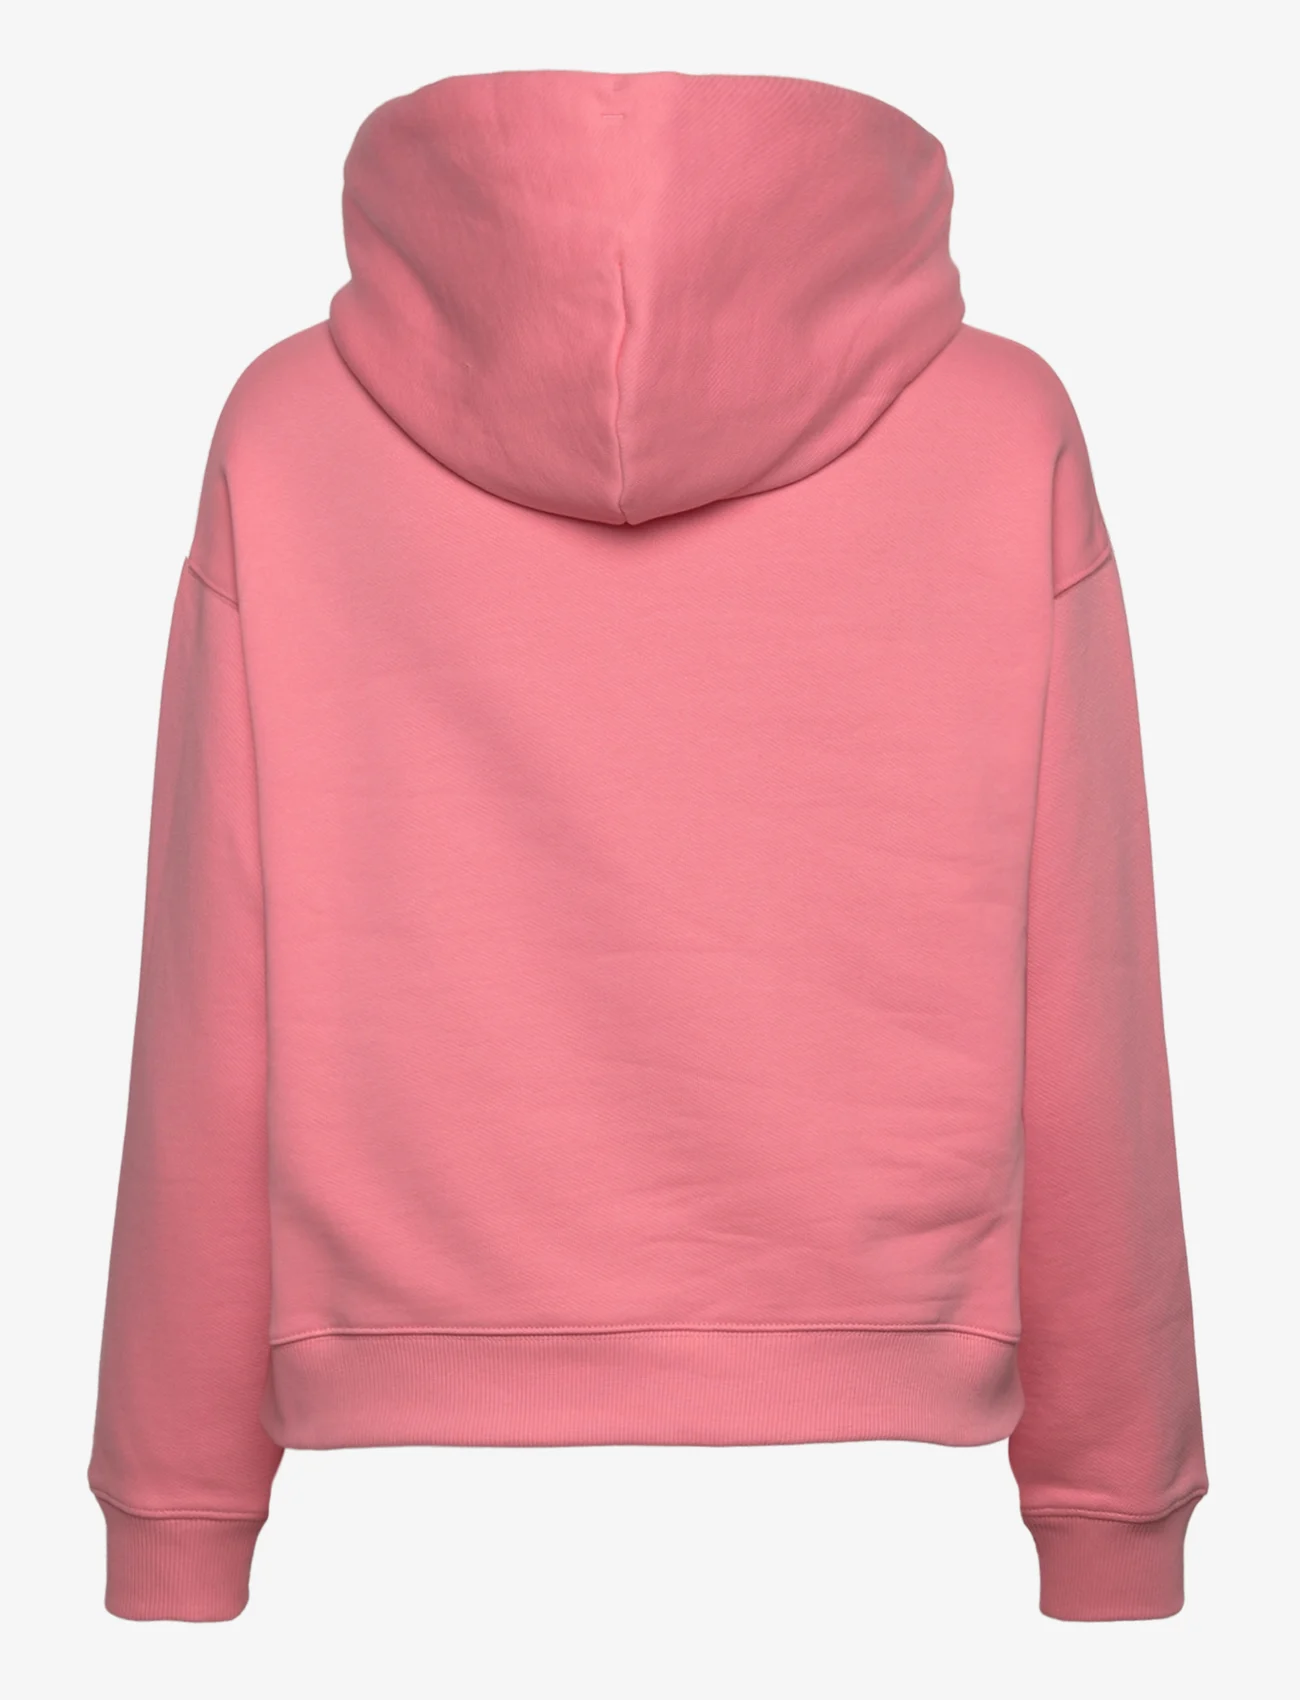 Tommy Jeans - TJW BXY BADGE HOODIE - hoodies - tickled pink - 1